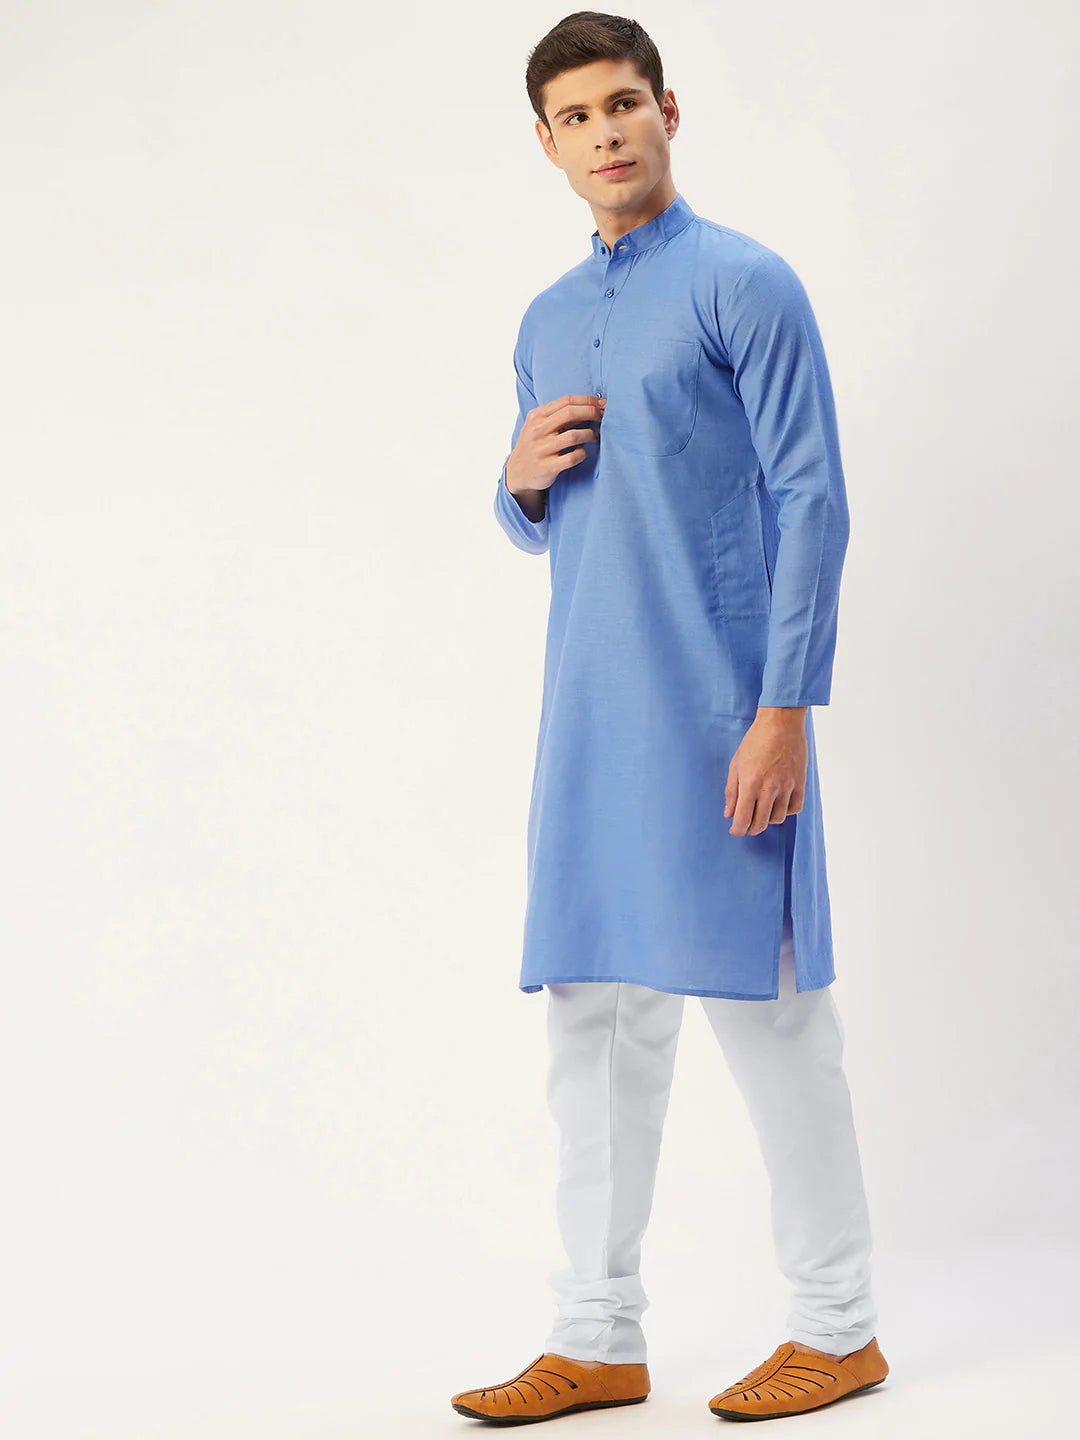 Jompers Men's Blue Cotton Solid Kurta Pyjama ( JOKP 611 Blue )